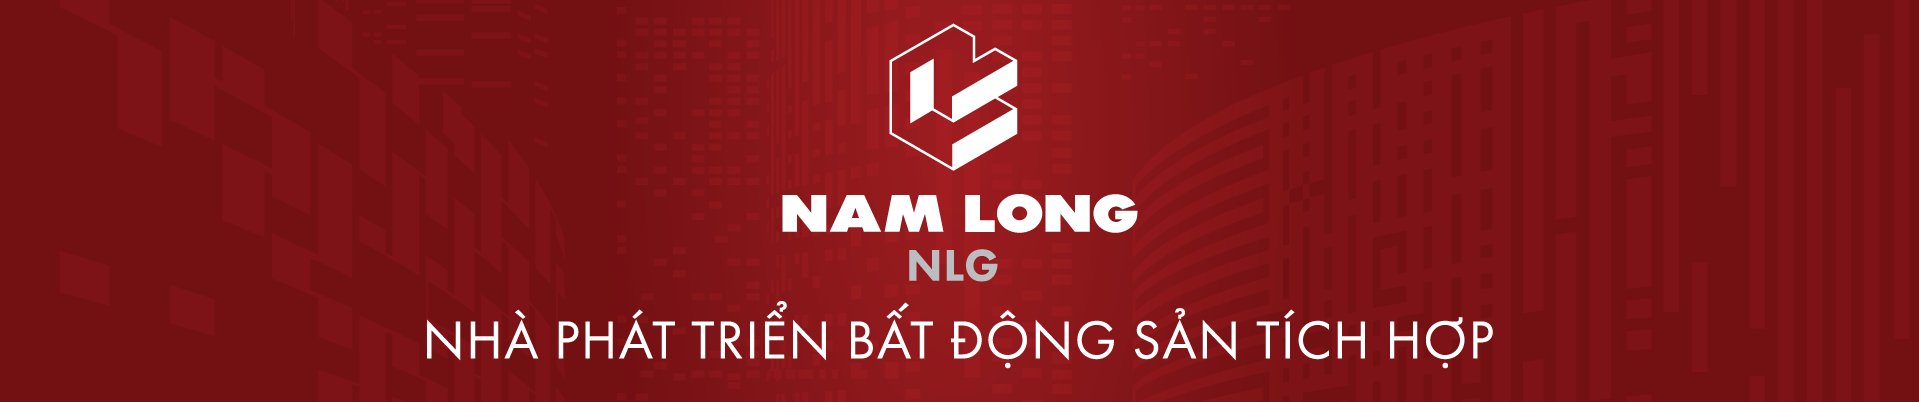 Cảnh báo mạo danh thương hiệu Nam Long